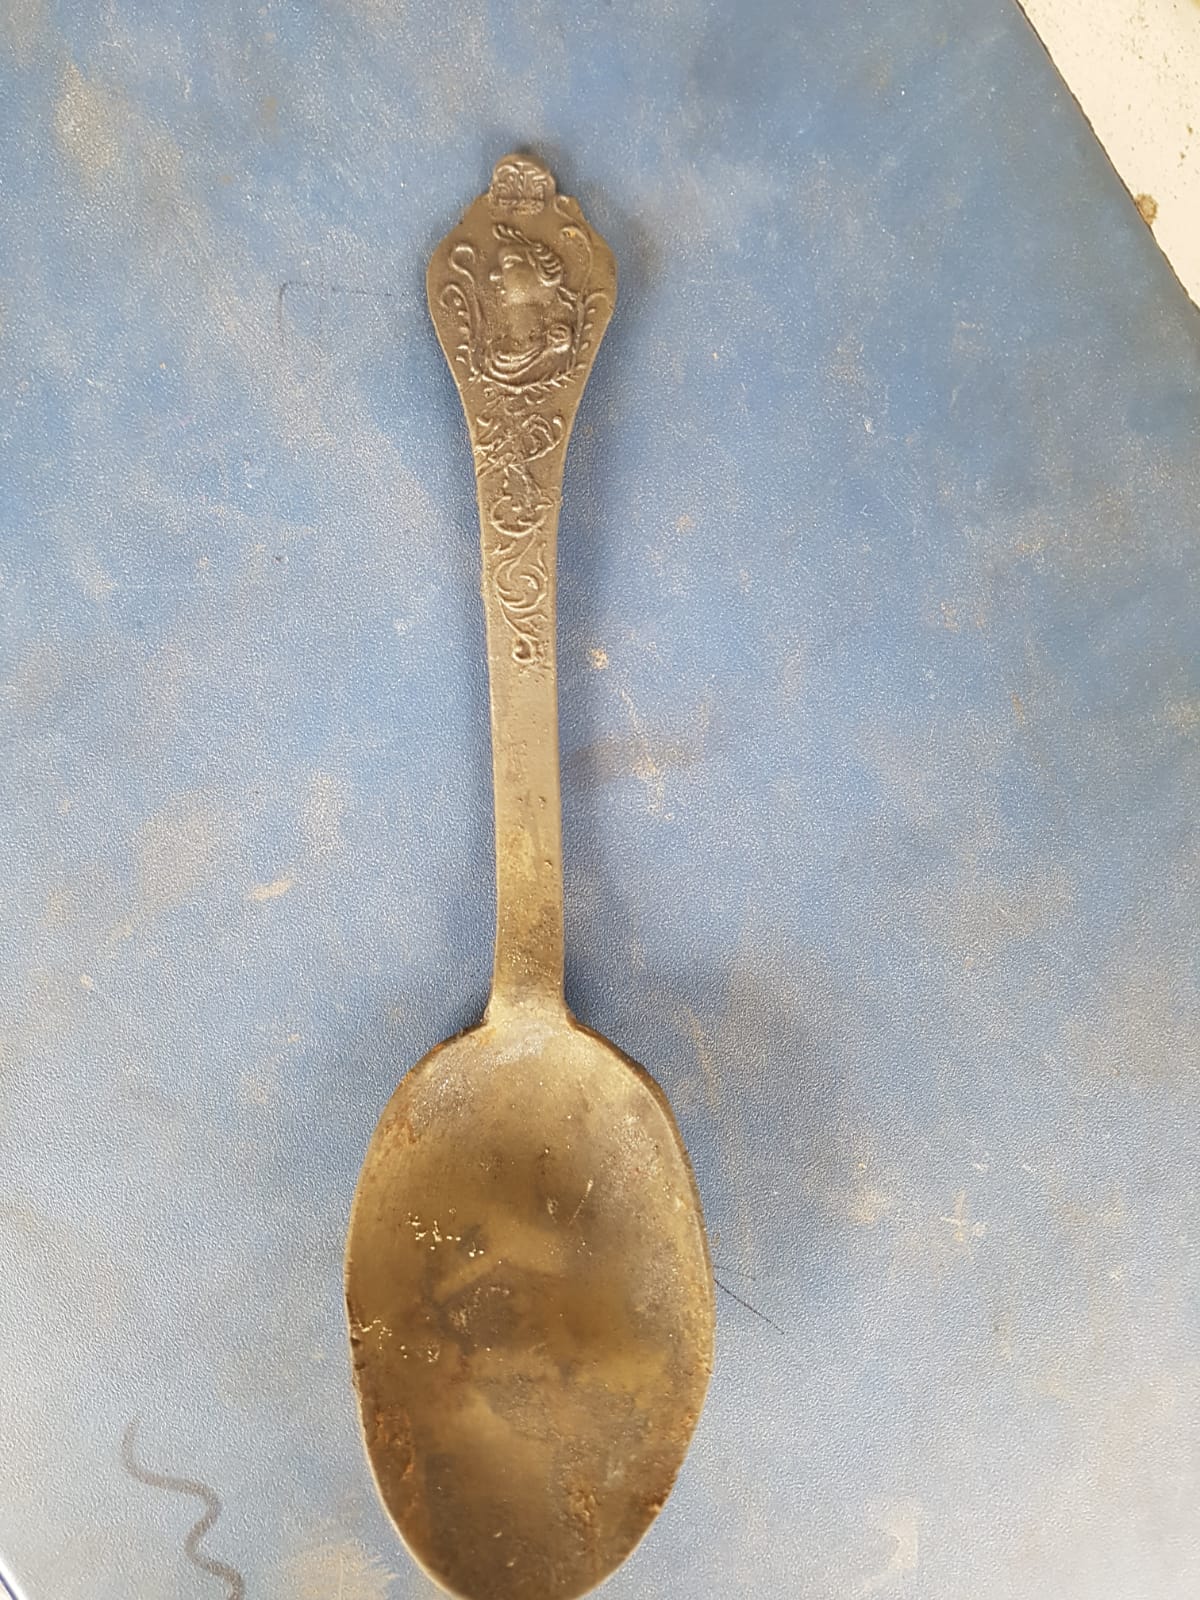 Twee zeldzame Royal Portrait Spoons gevonden in ‘Noordoostvaarder’Two rare Royal Portrait spoons found in ship wreck